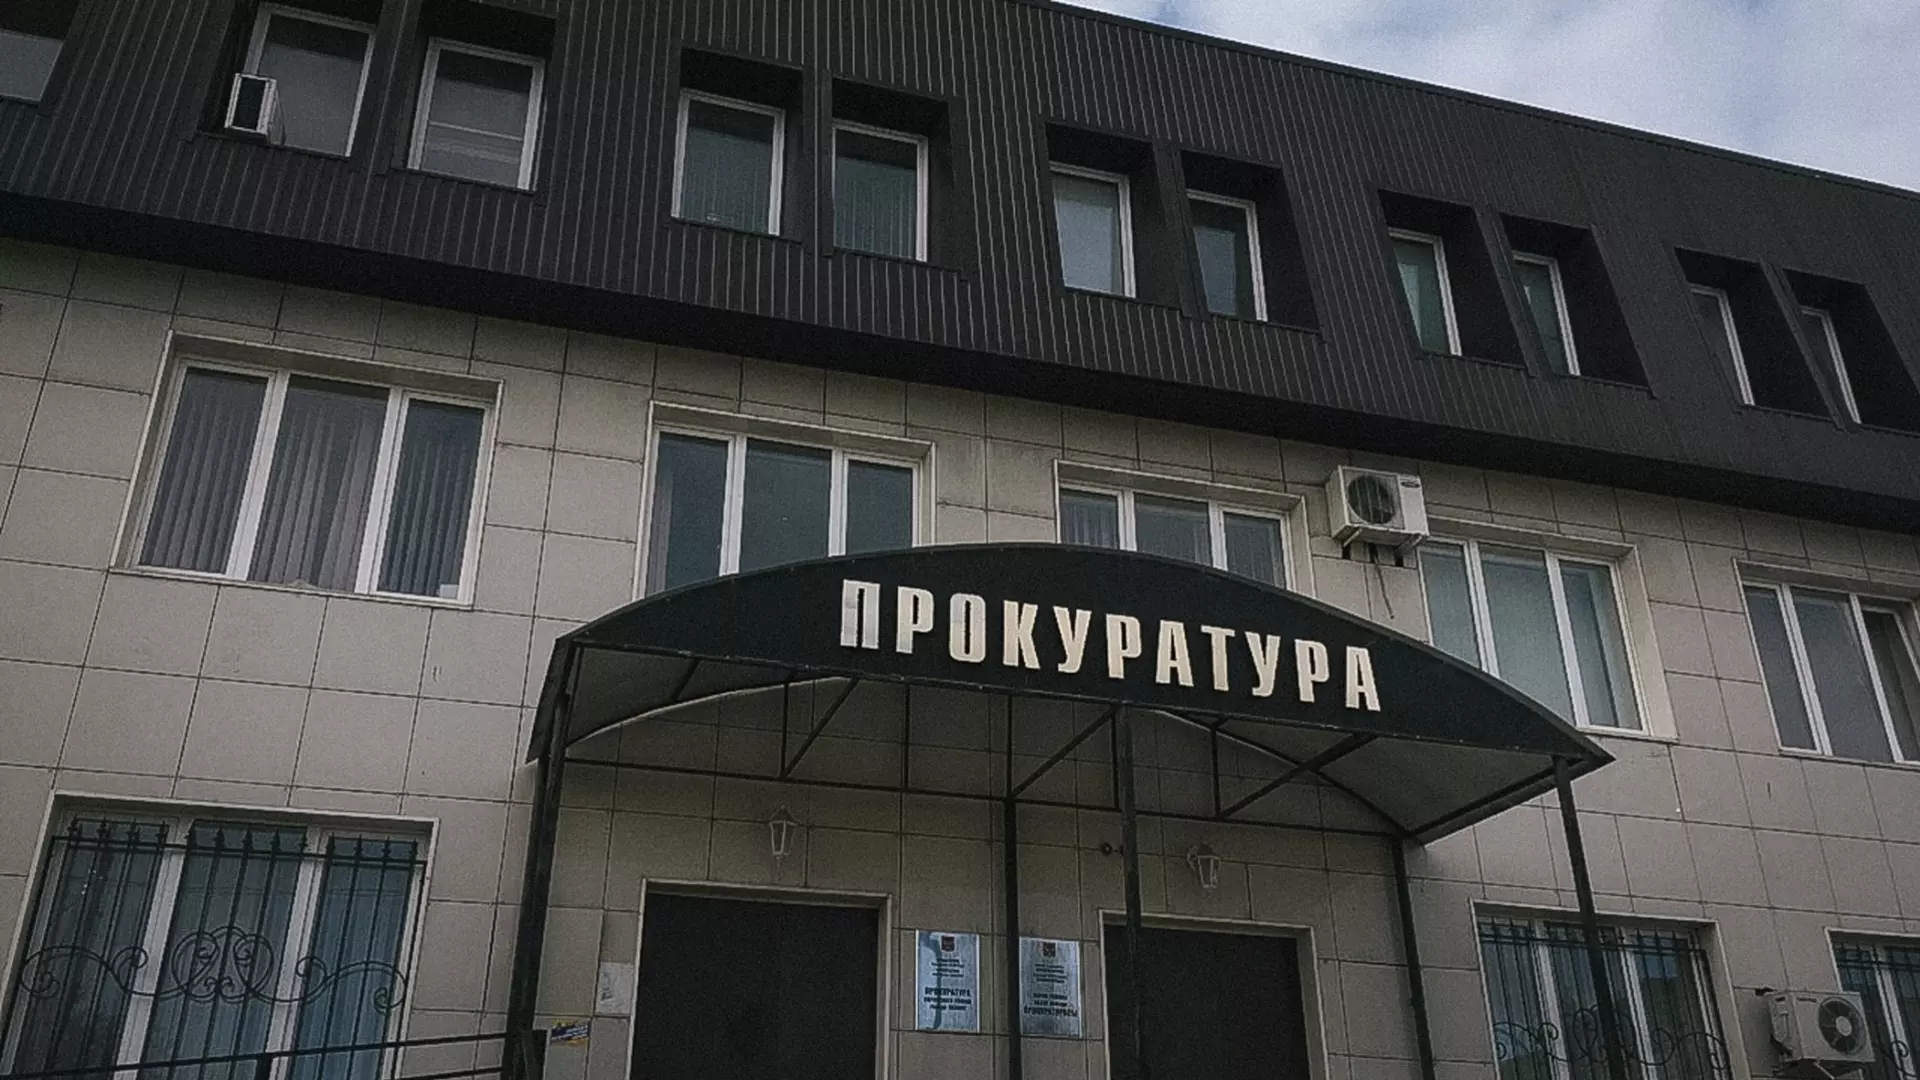 Прокуратура наказала чиновника в Ростовской области штрафом за плохую работу